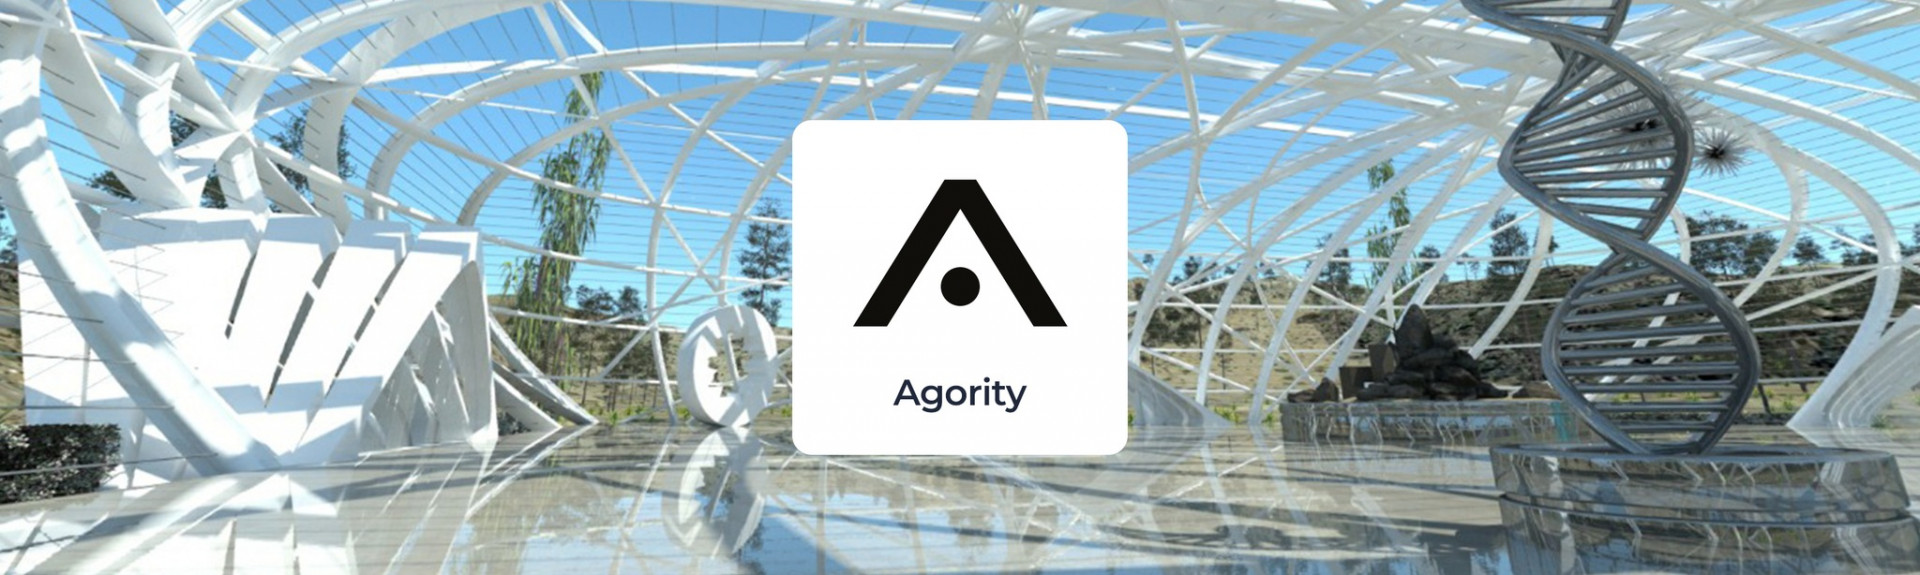 Agority